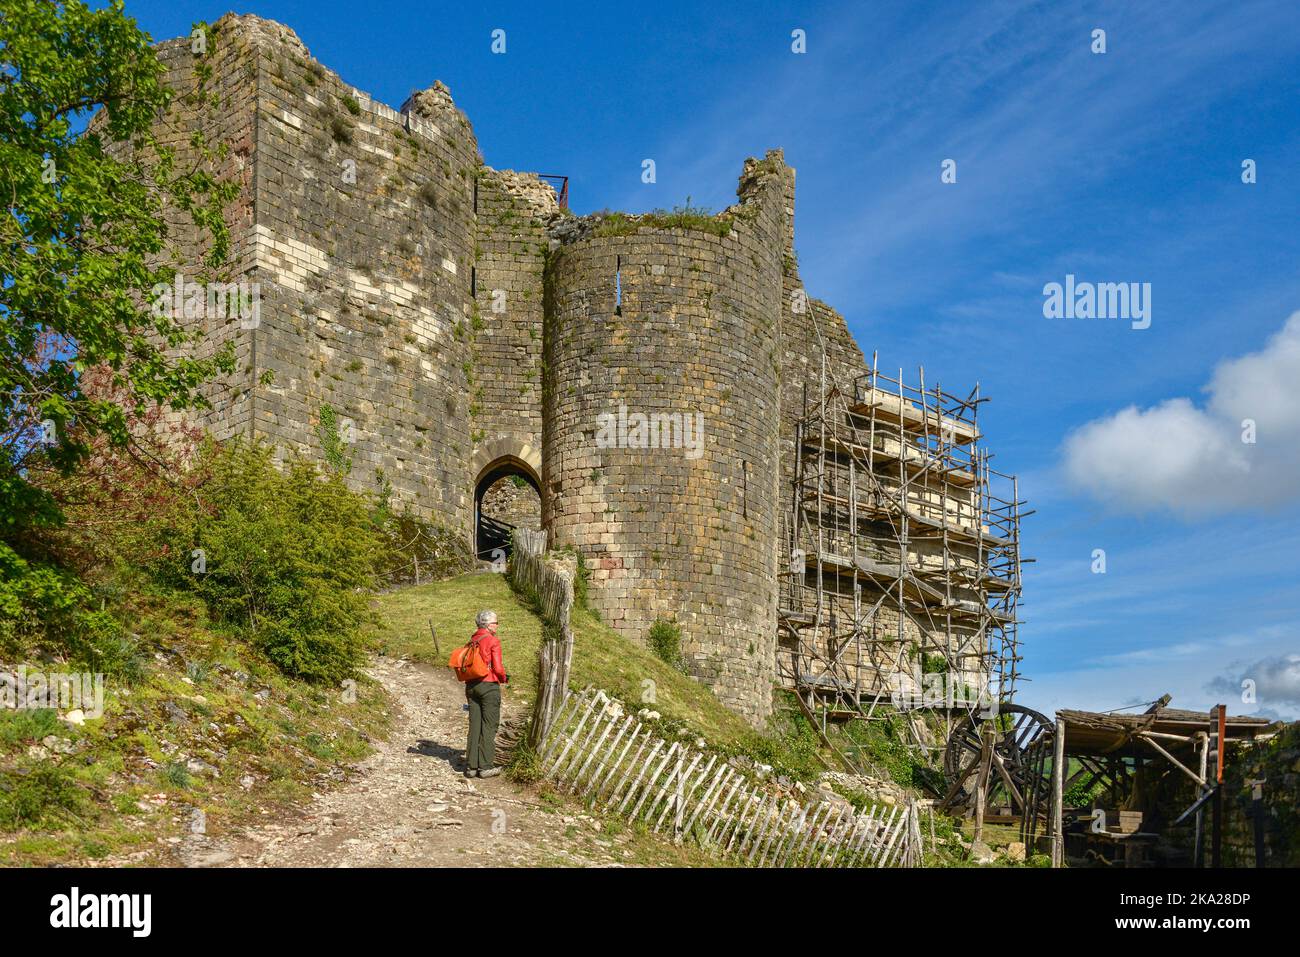 Un touriste en manteau rouge, regardant les ruines du château médiéval de Penne dans la région occitanie du sud de la France. Banque D'Images